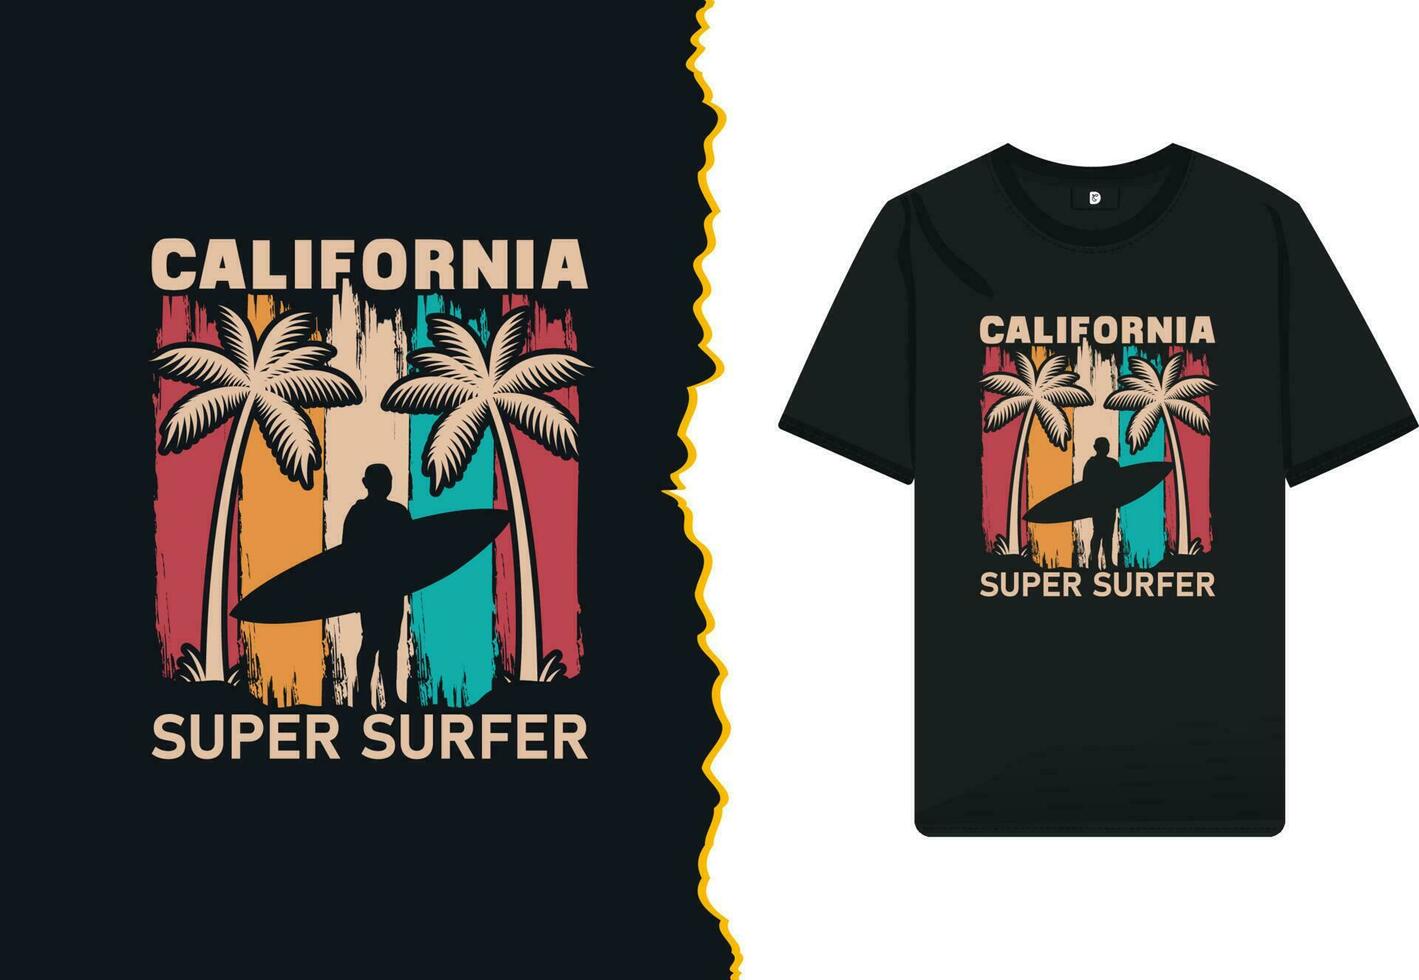 Kalifornien Super Surfer T-Shirt Design Vorlage. hohe Qualität Vektor Design zum drucken auf ein Shirt, Becher, Gruß Karte, und Poster.